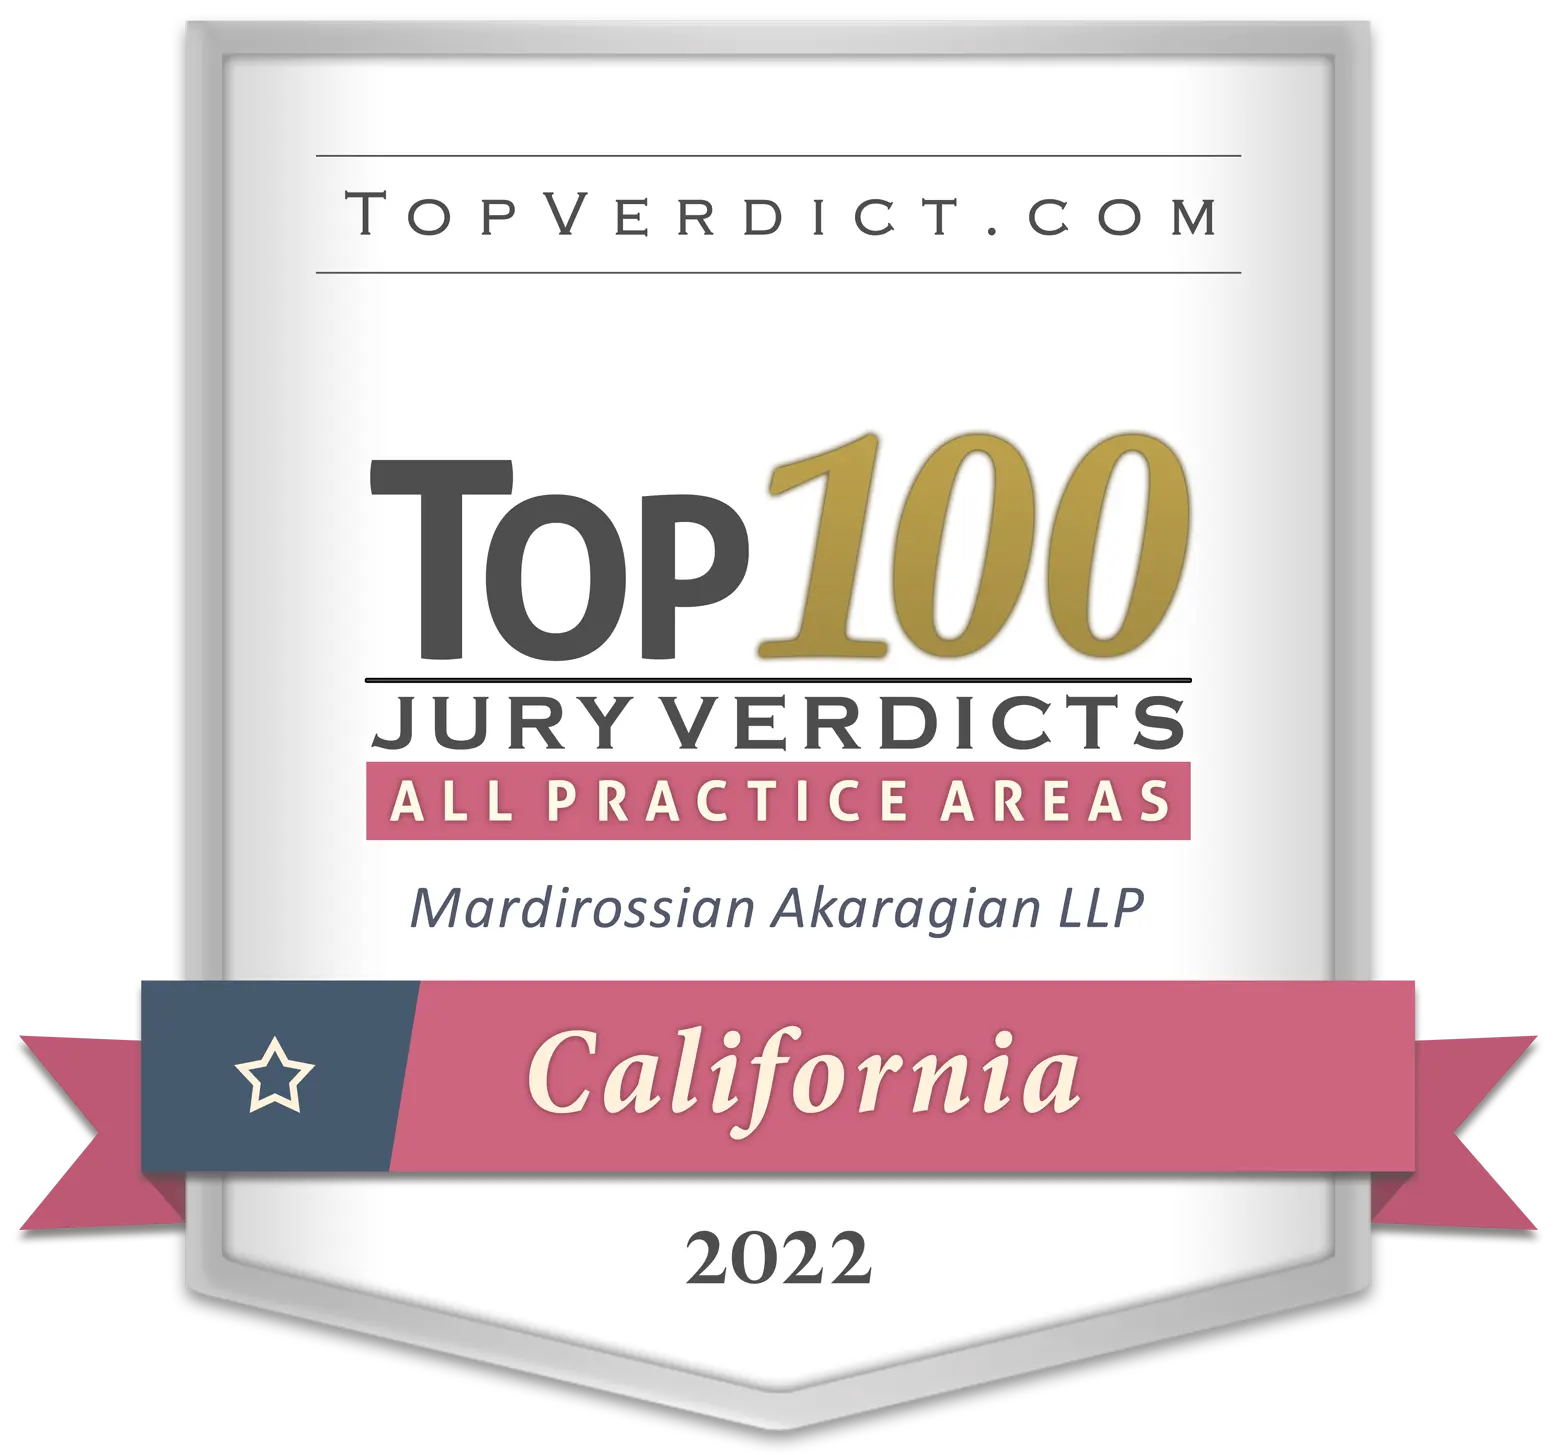 TopVerdict.com - Top 100 Jury Verdicts, California, 2022